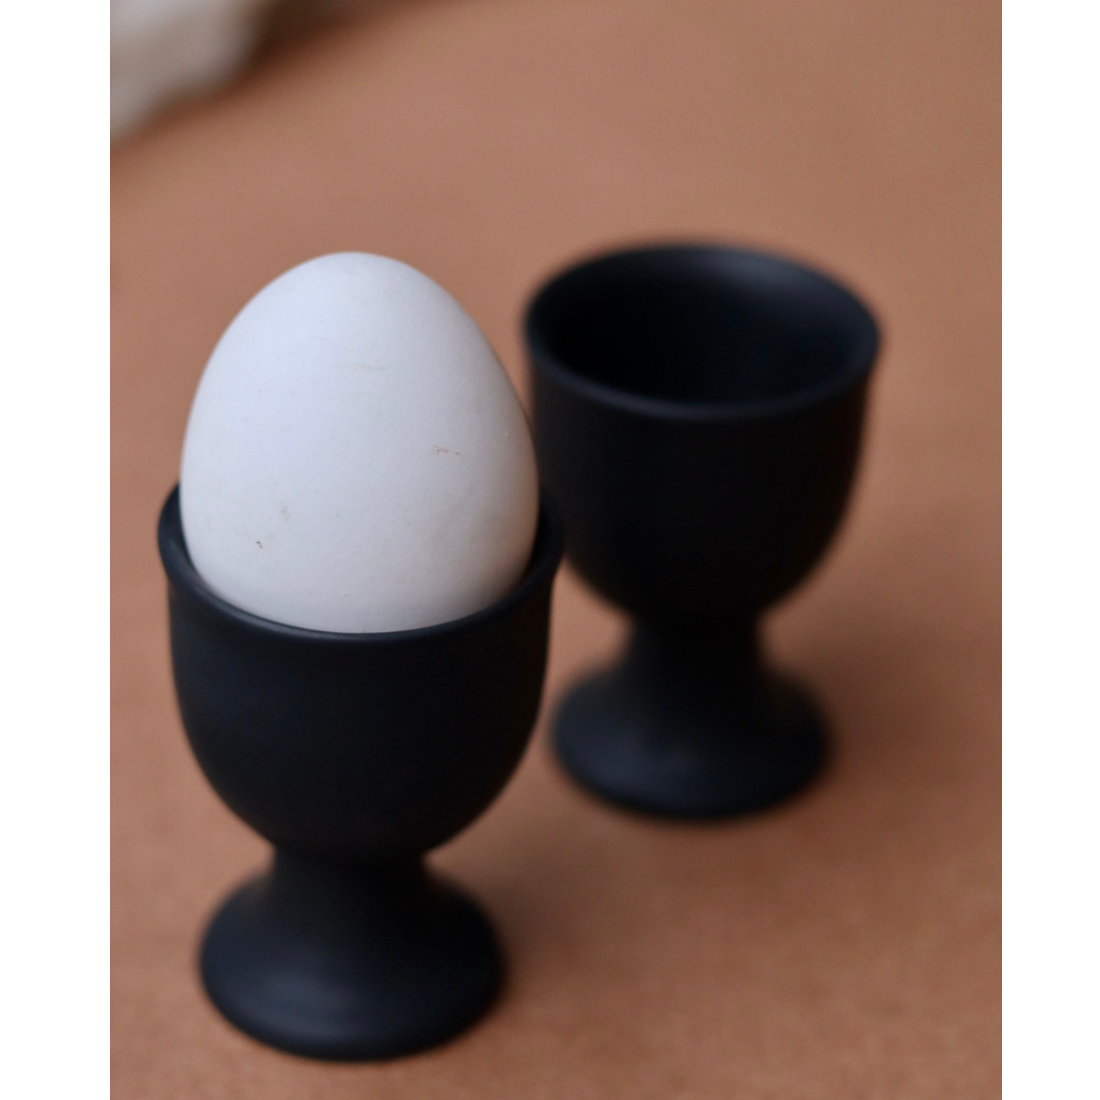 Two black egg holder one having egg